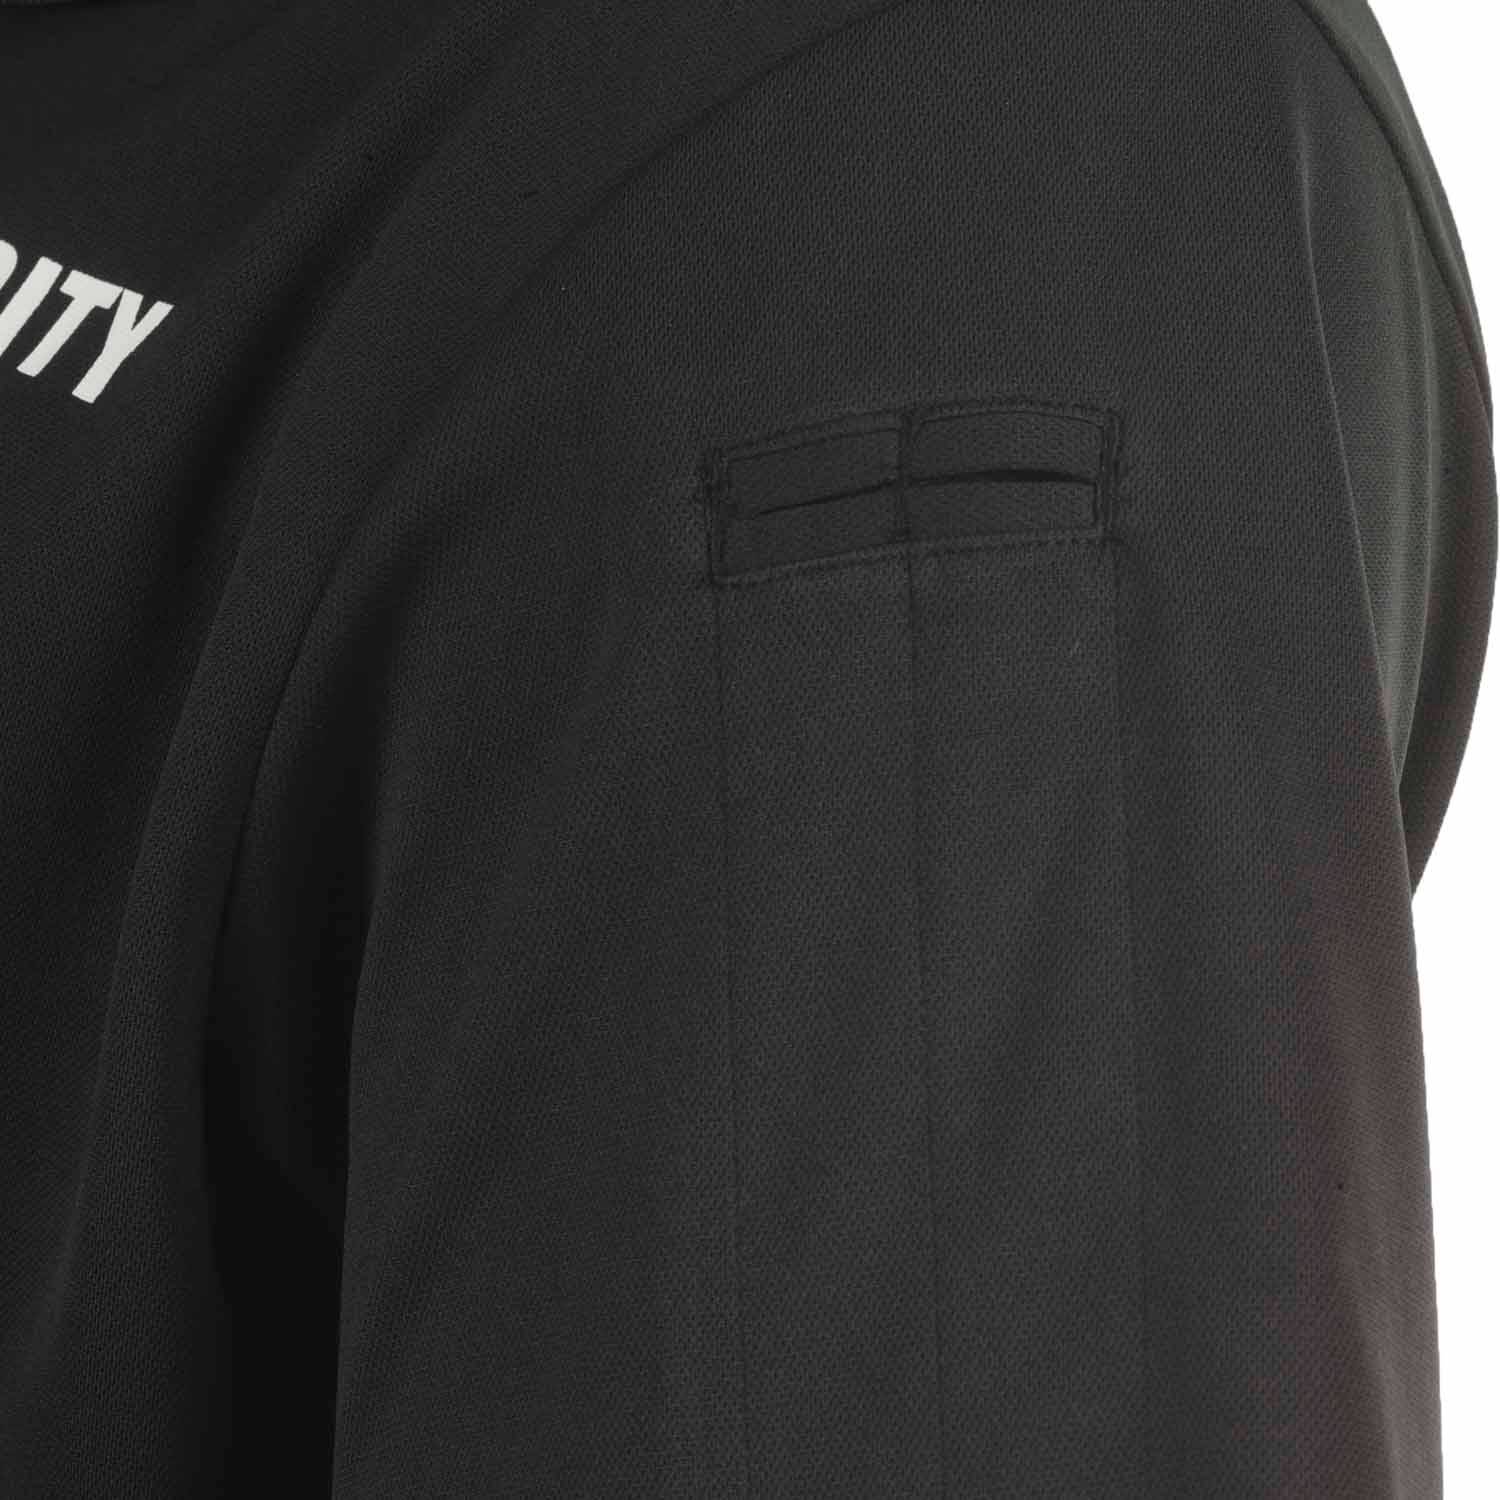 Propper Security Uniform Polo Shirt | Pique Polos